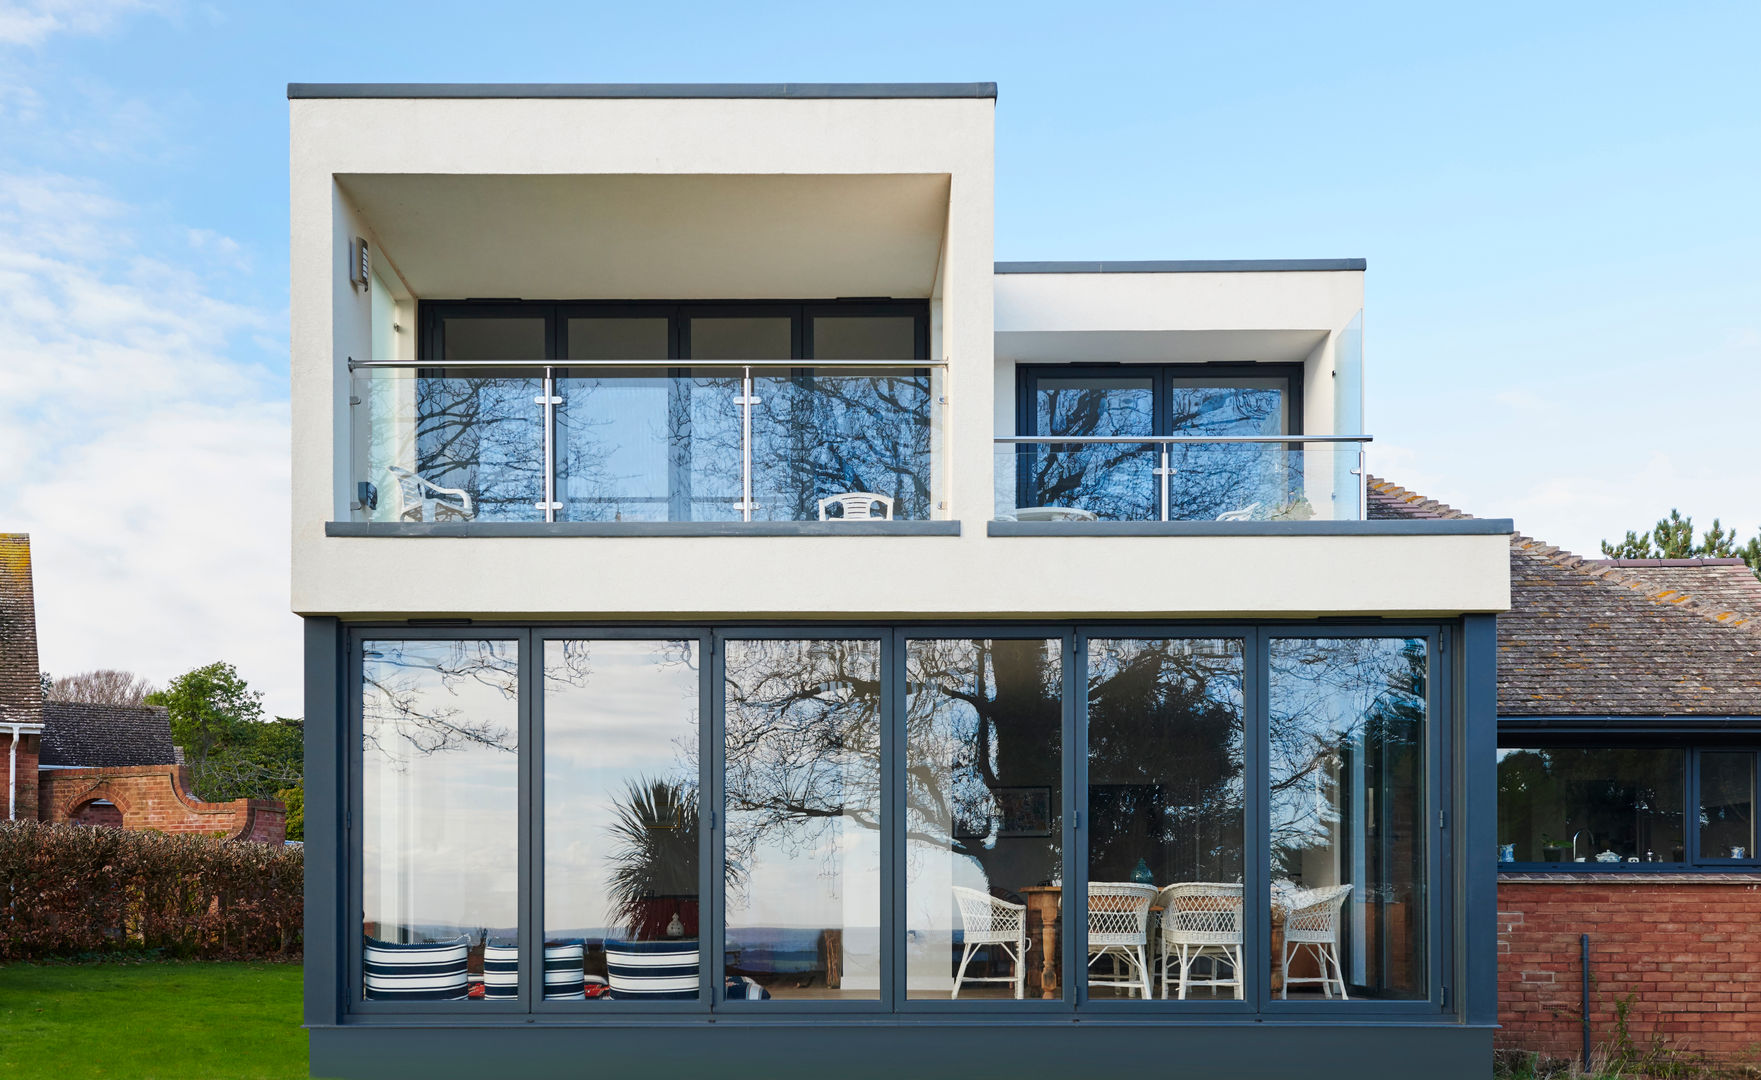 Boucher Road Exterior Barc Architects Casas de estilo moderno contemporary,modern